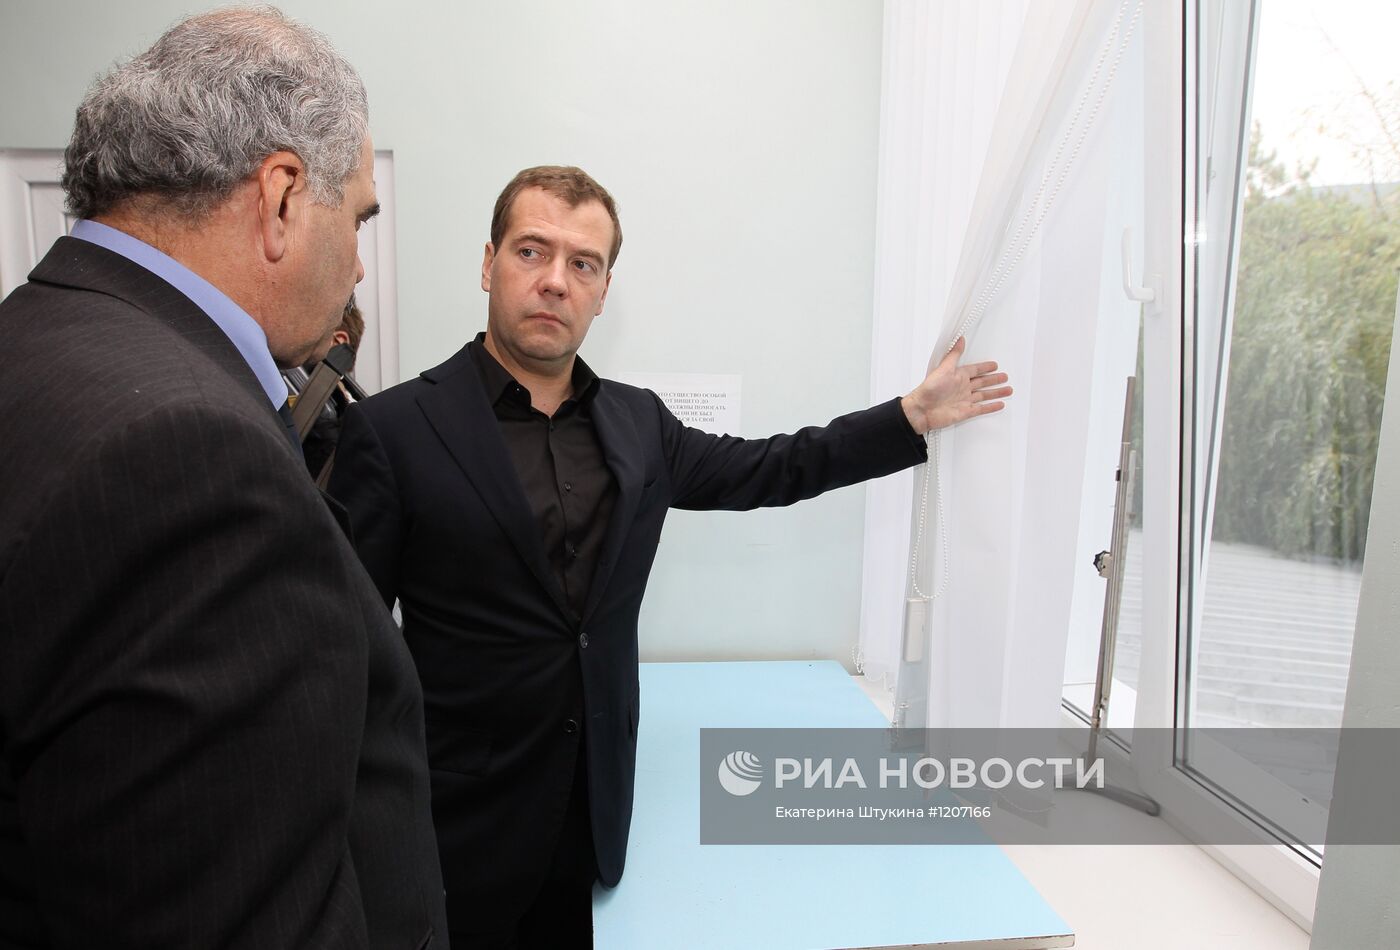 Рабочий визит Д. Медведева в Южную Осетию